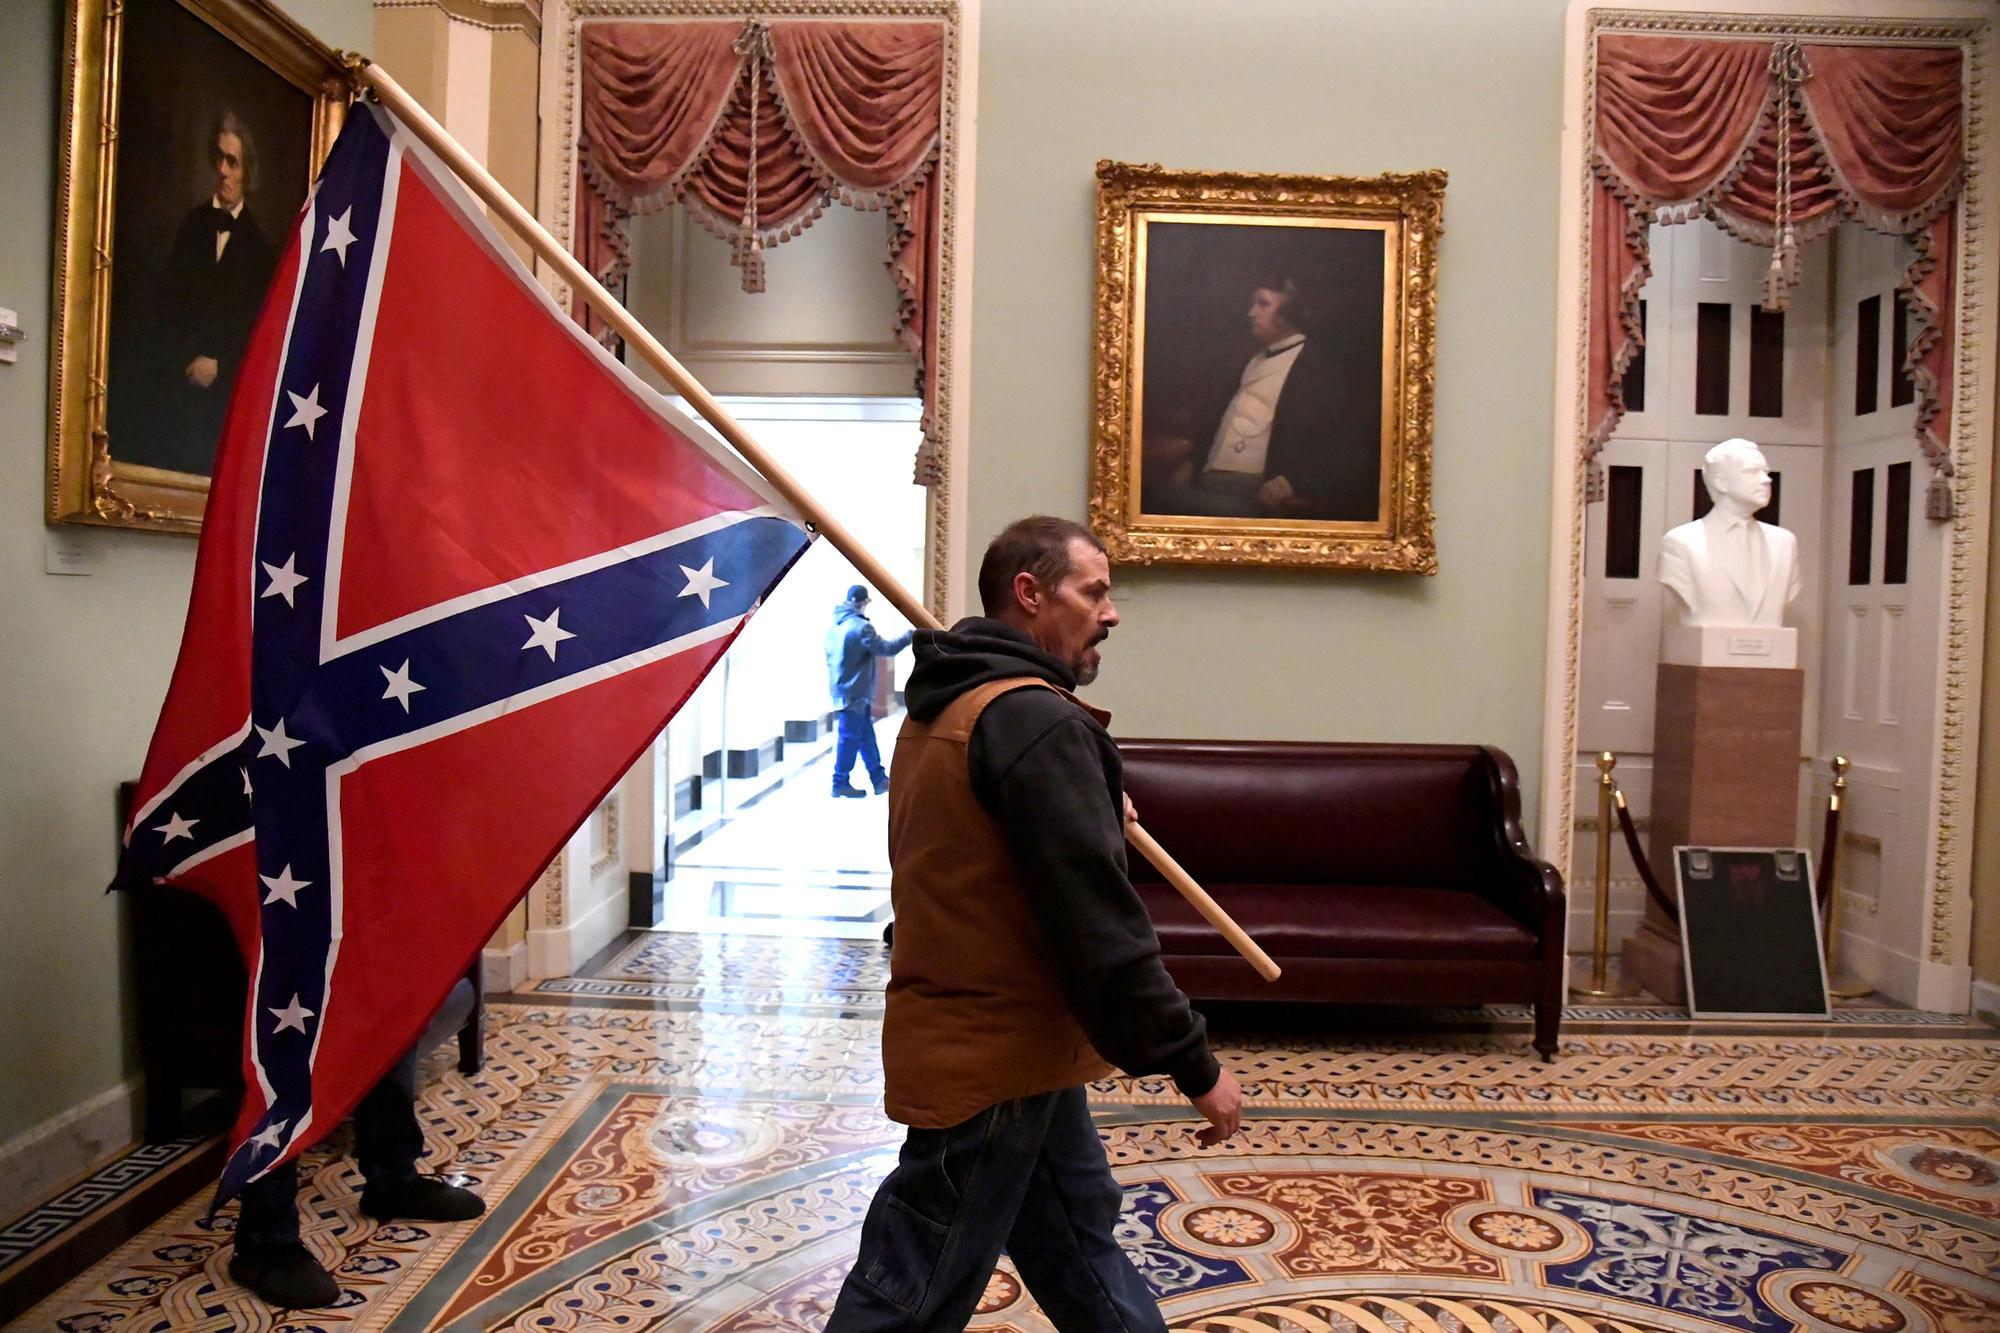 Man met de Confederale vlag van de Zuidelijke staten die zich afscheurden van de VS om slavernij in stand te kunnen houden